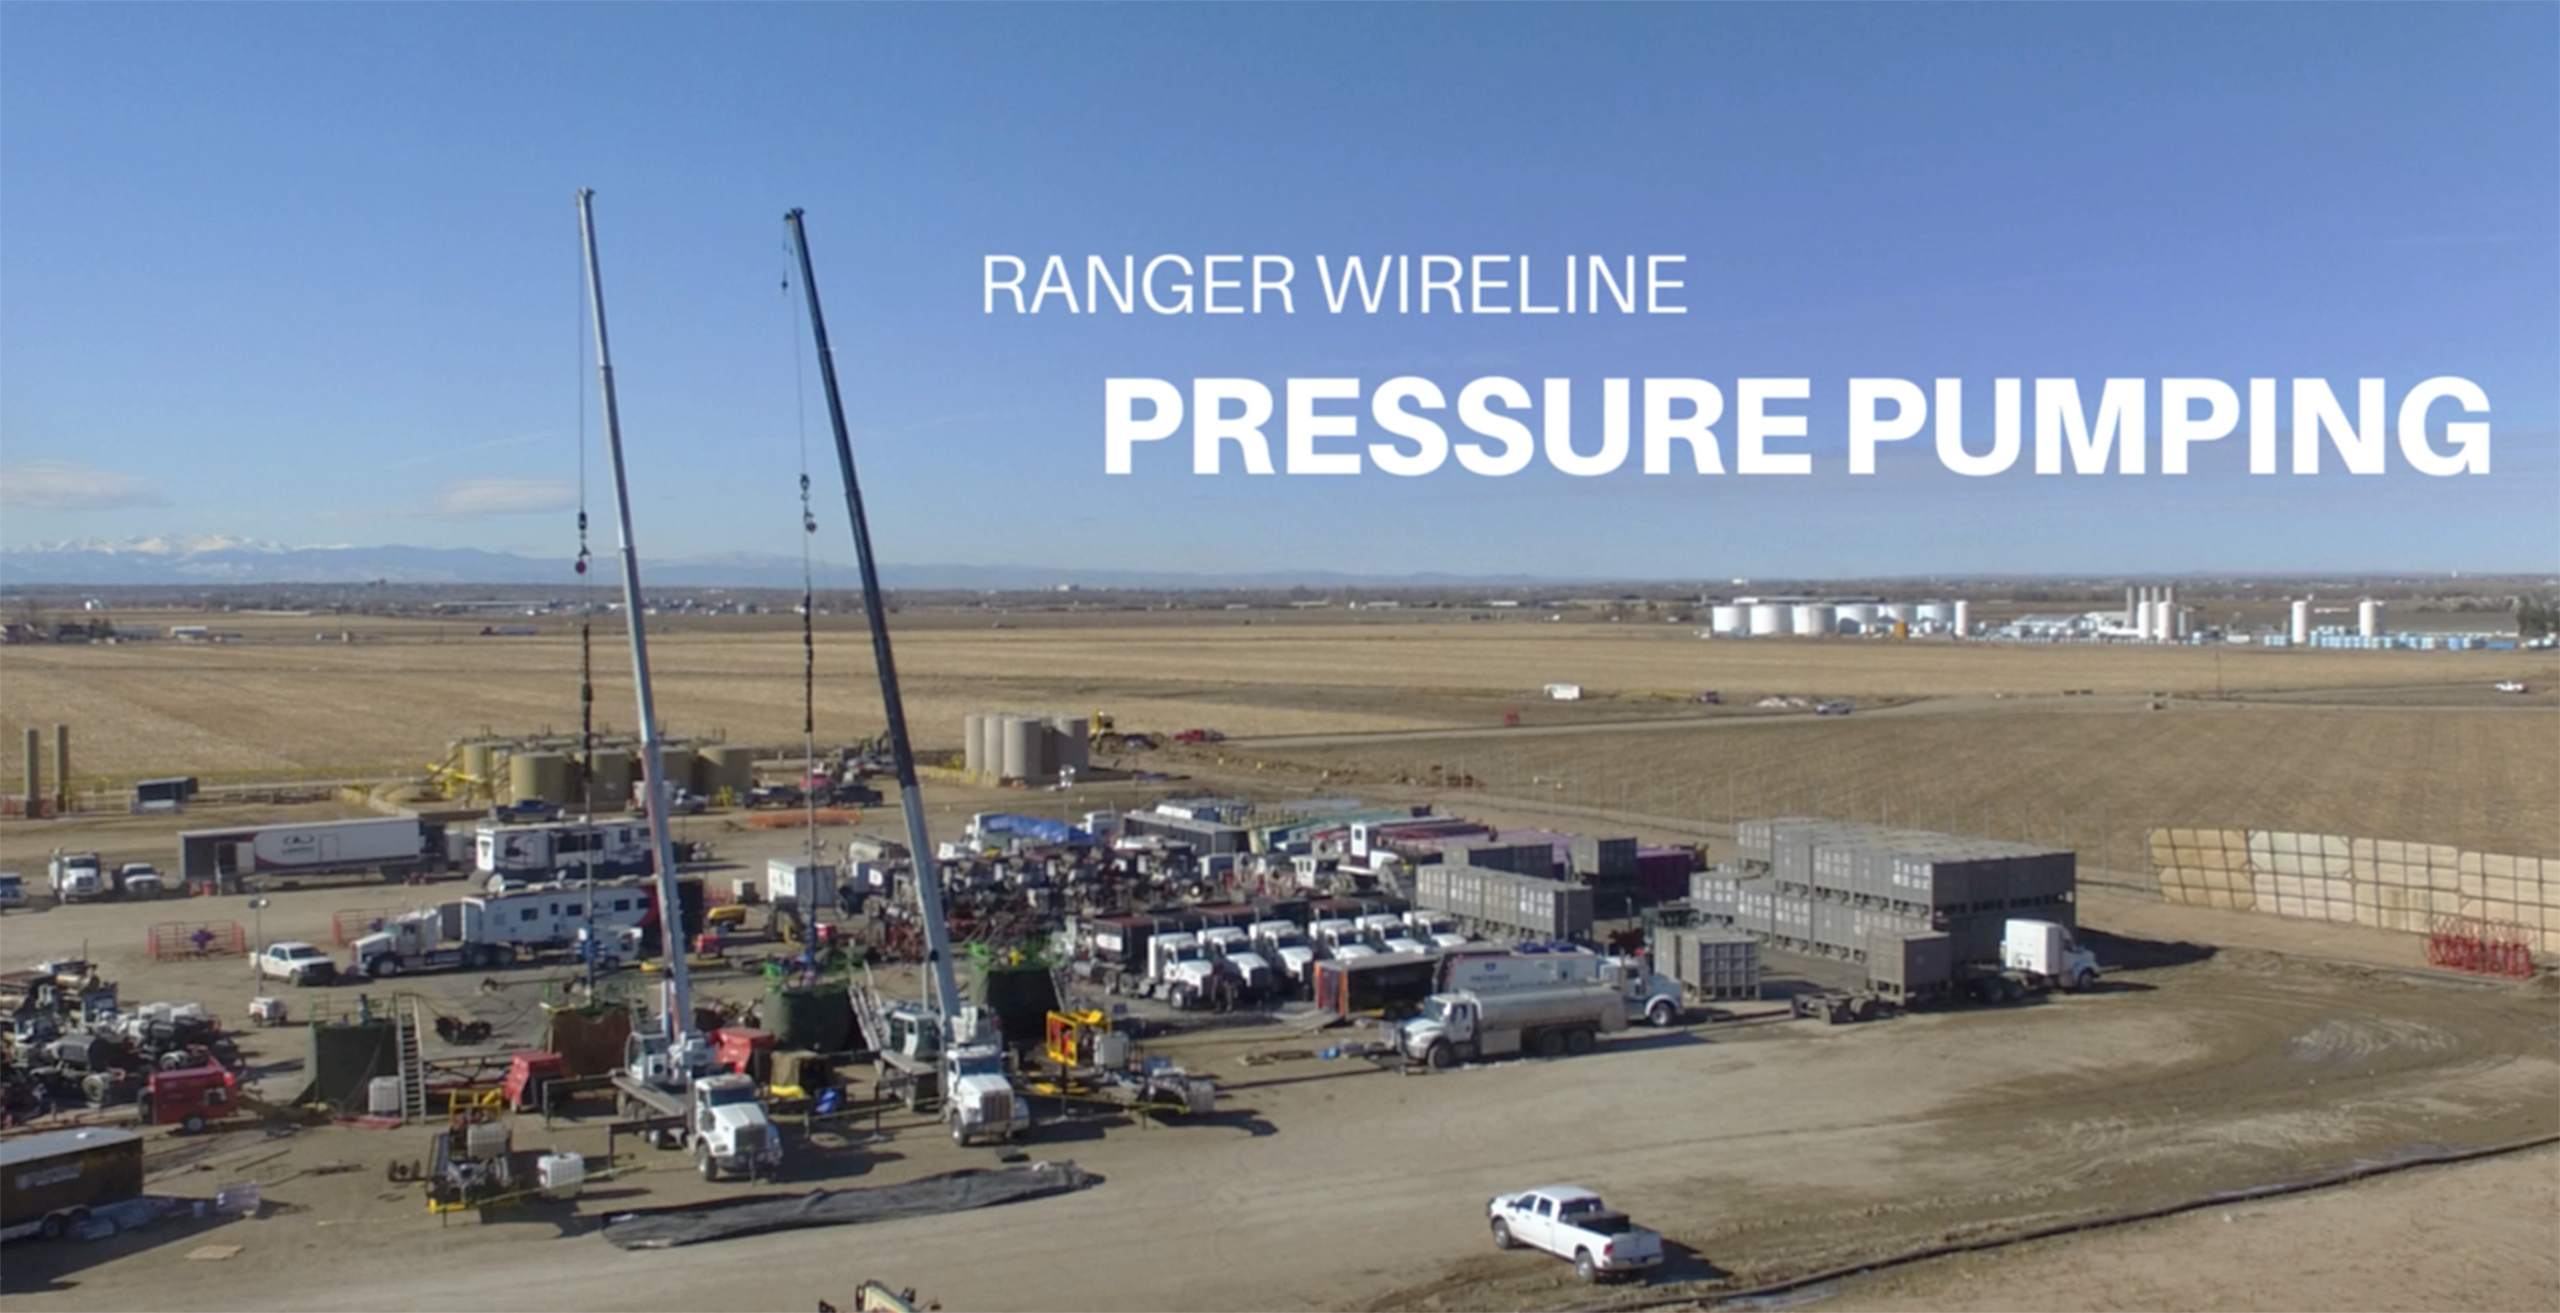 Ranger Wireline Pressure Pumping